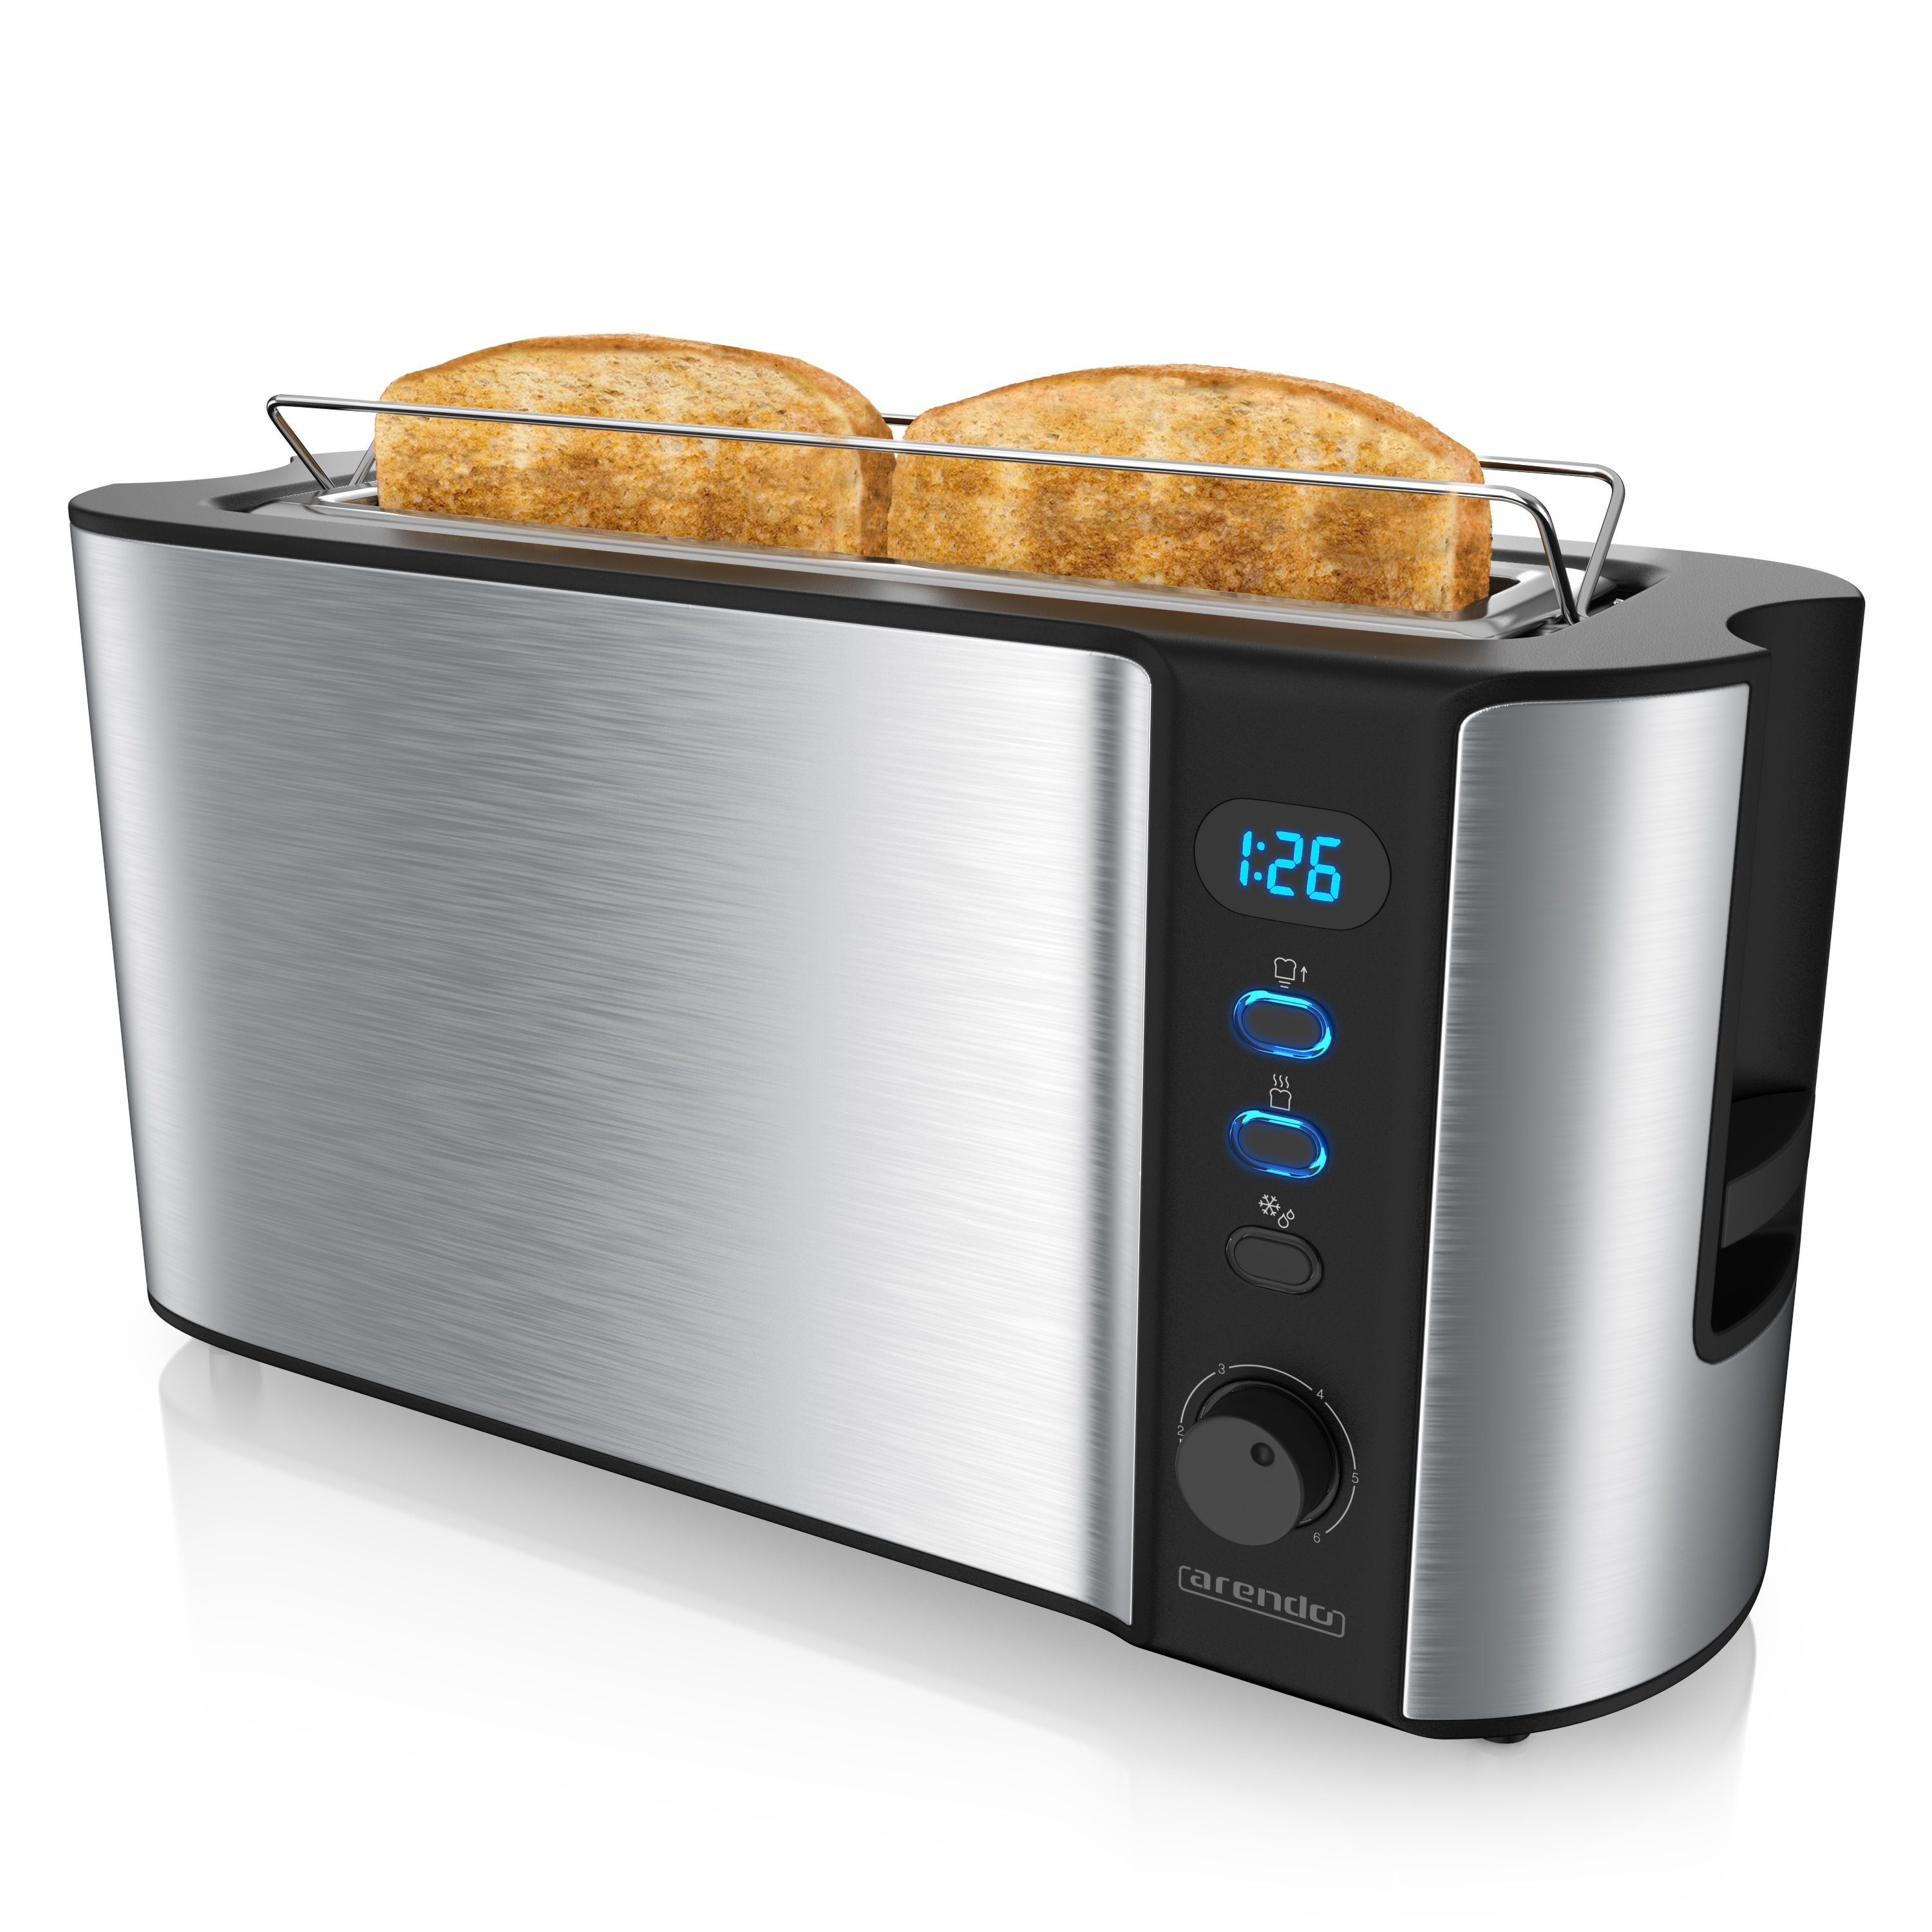 Arendo Toaster, 1 Gehäuse, Edelstahl Brötchenaufsatz, für langer Langschlitz, Scheiben, W, Display 2 Wärmeisolierendes Schlitz, 1000